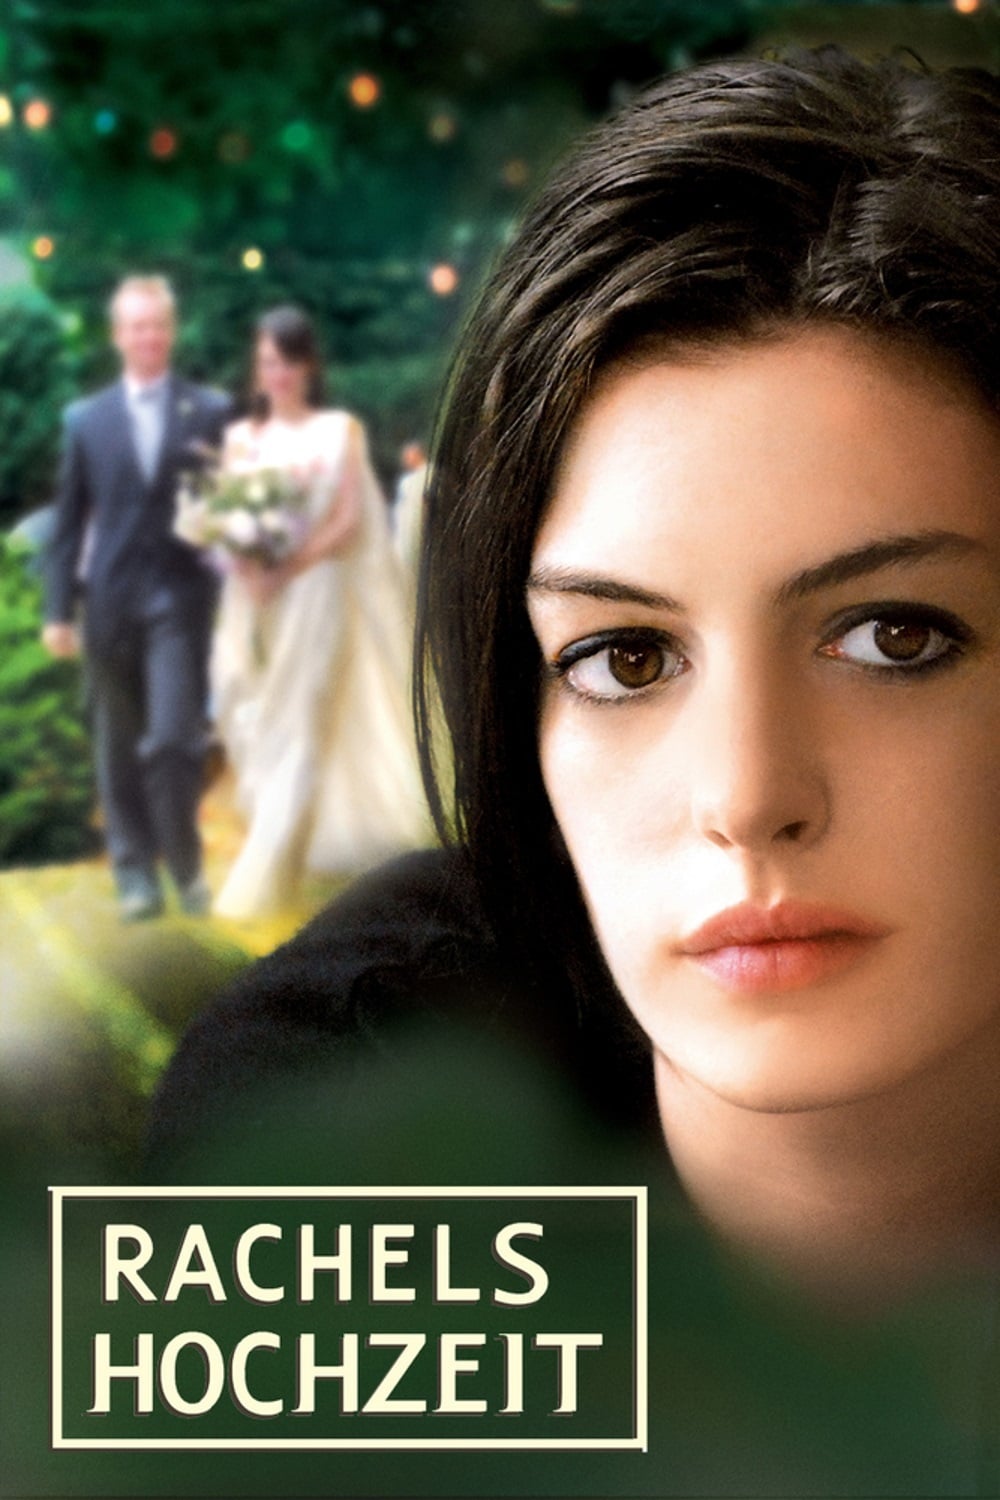 Plakat von "Rachels Hochzeit"